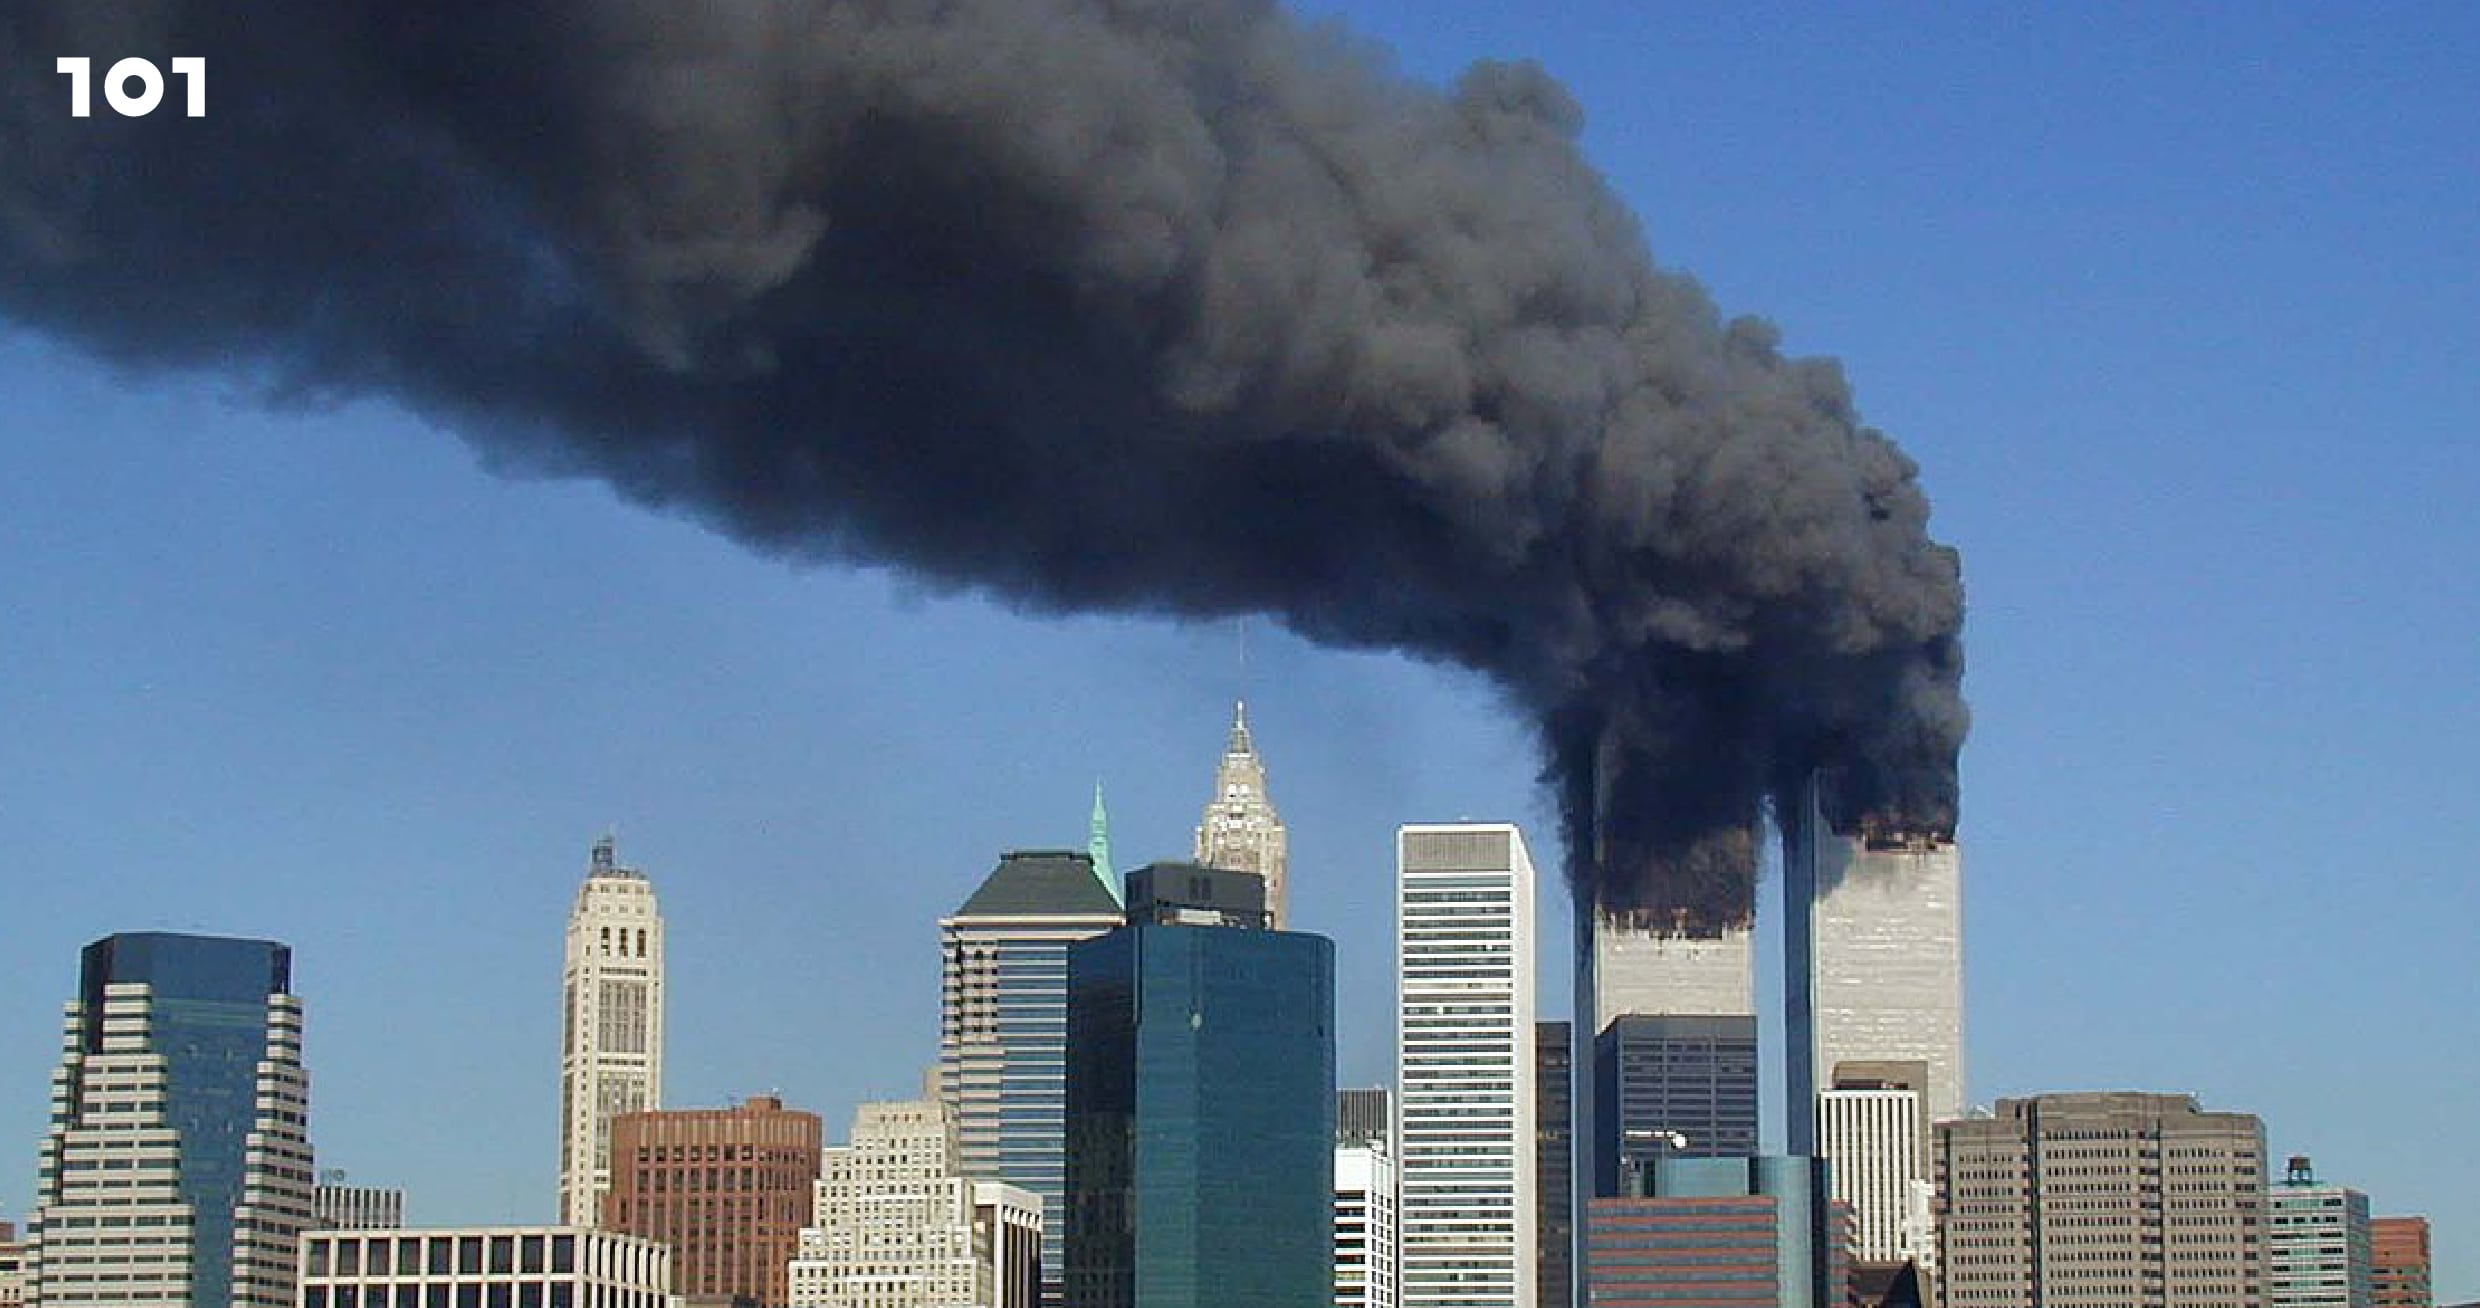 20 ปีเหตุการณ์ 11 กันยายน 2001-2021 เราเรียนรู้อะไรได้บ้าง